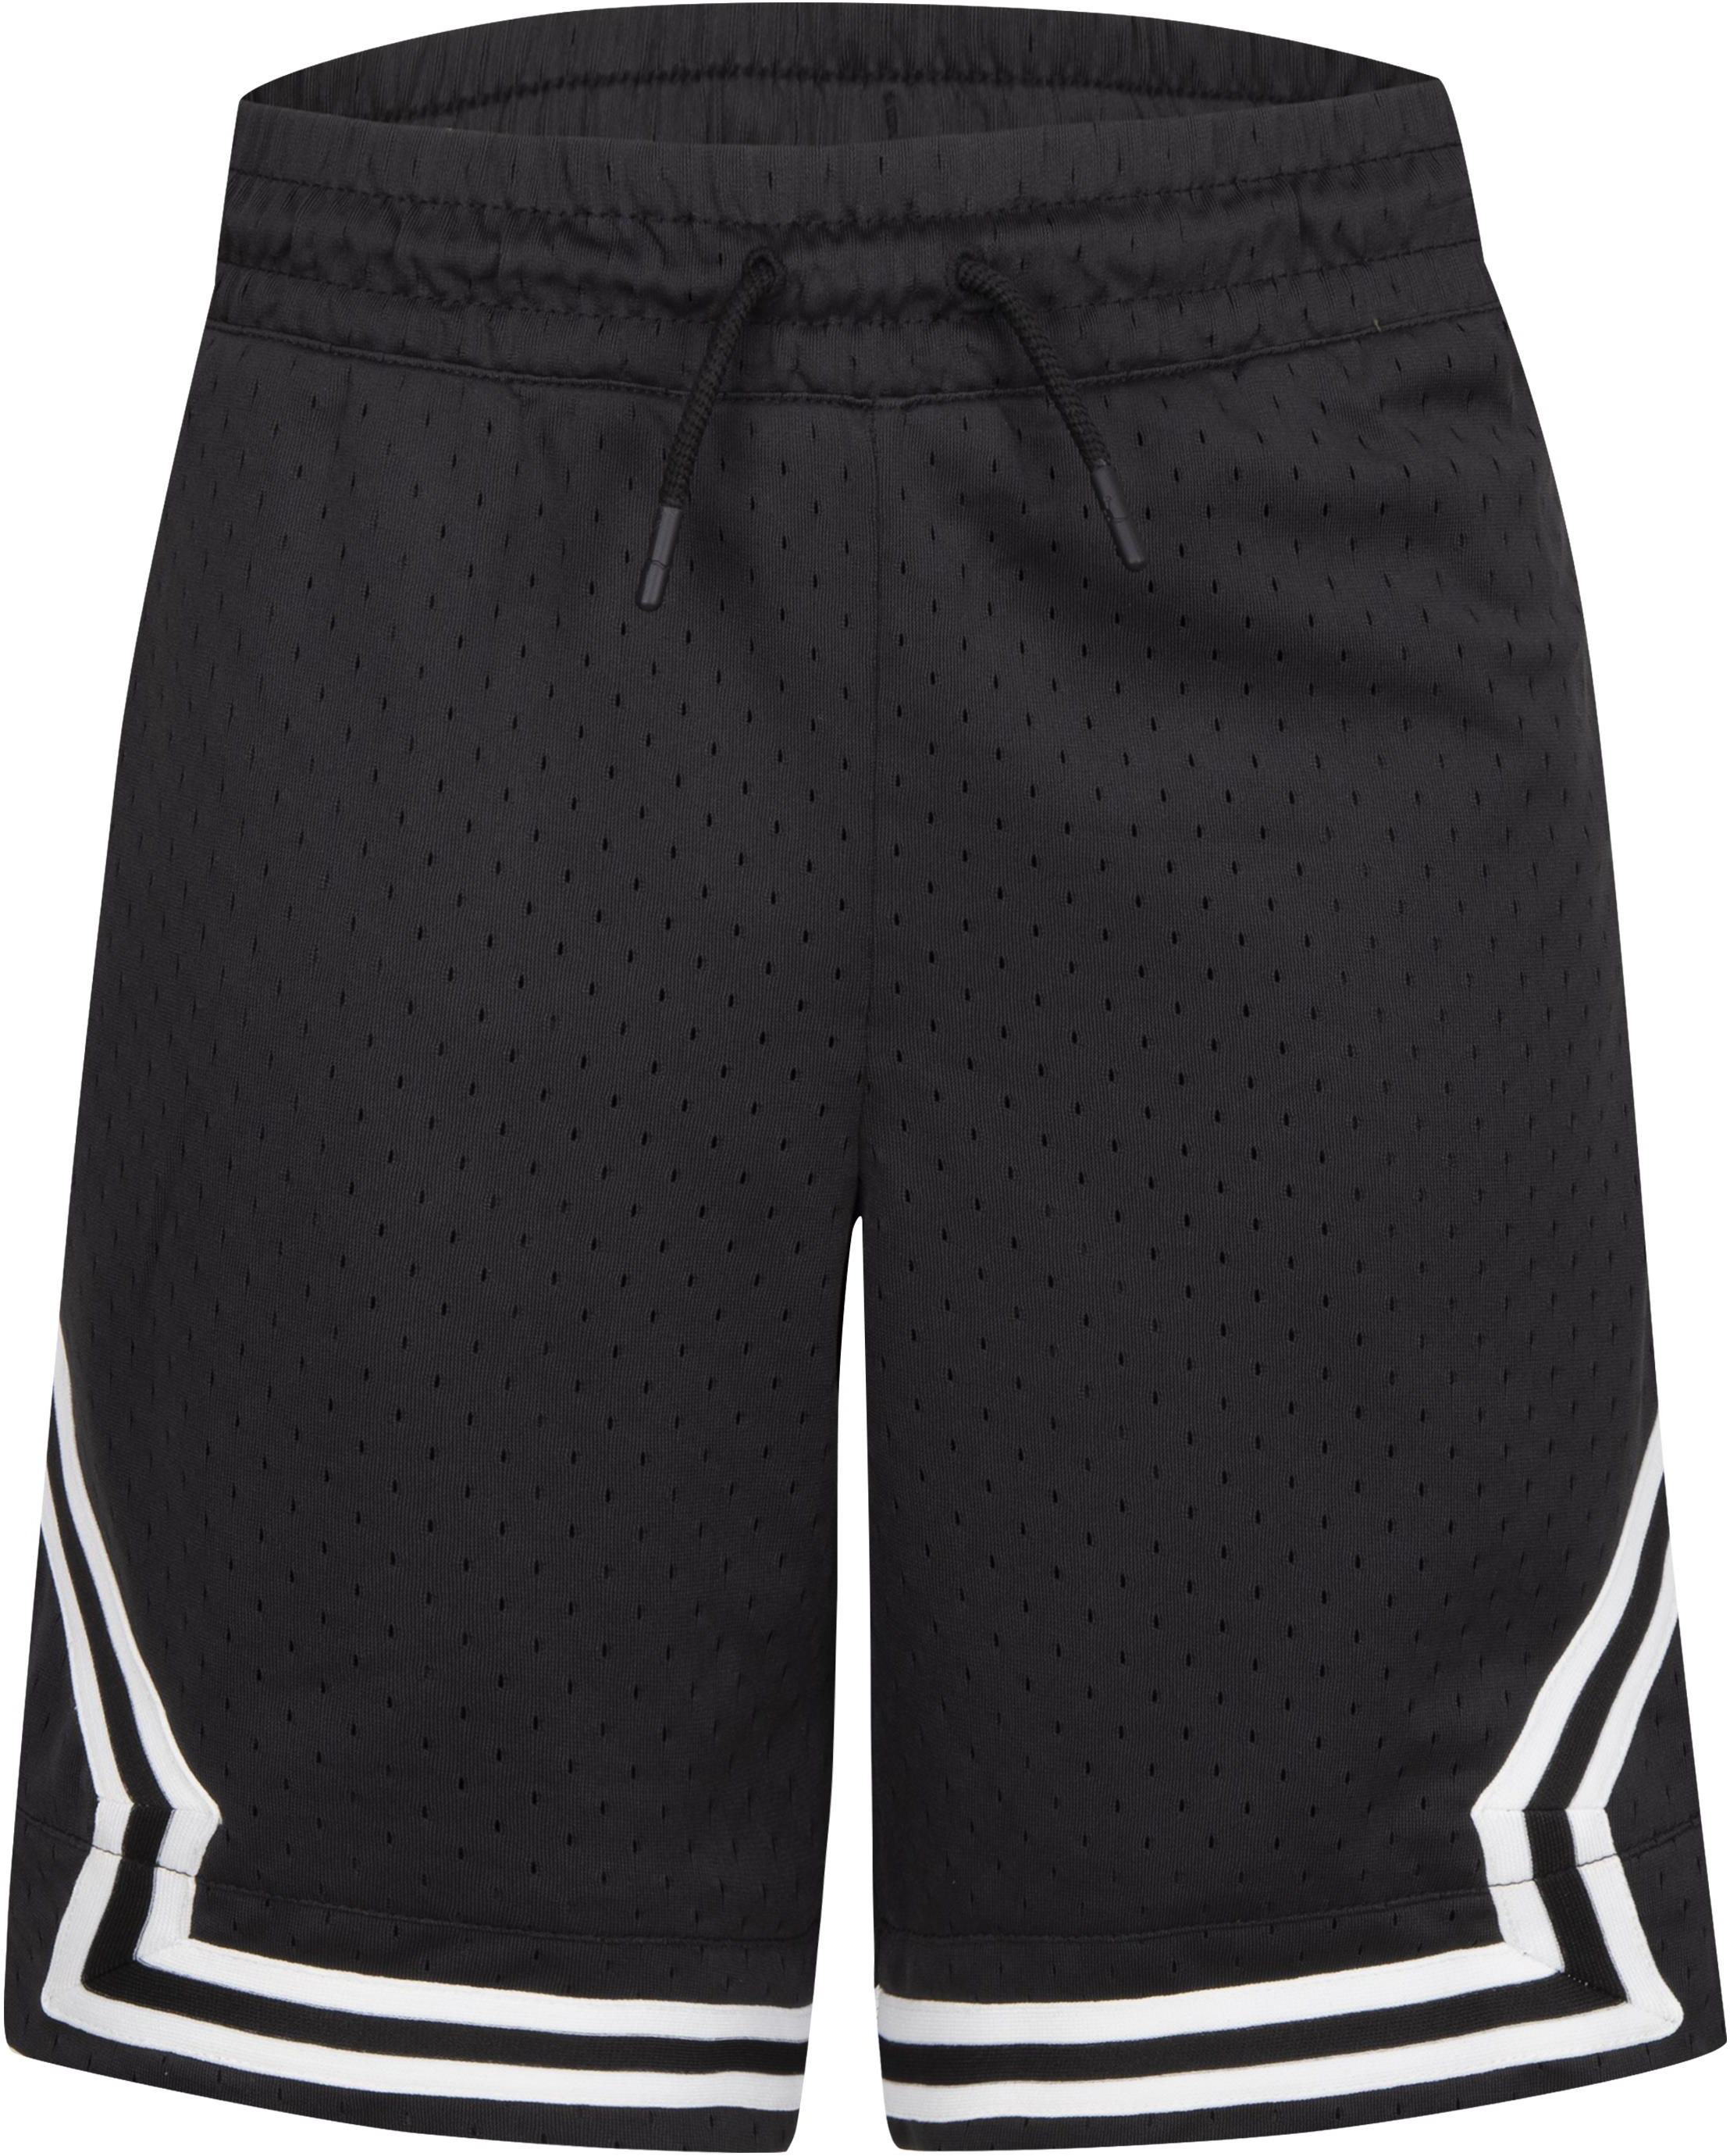 Jordan Men's Dri-Fit Air Diamond Shorts, XXL, White/Black/Smoke Grey